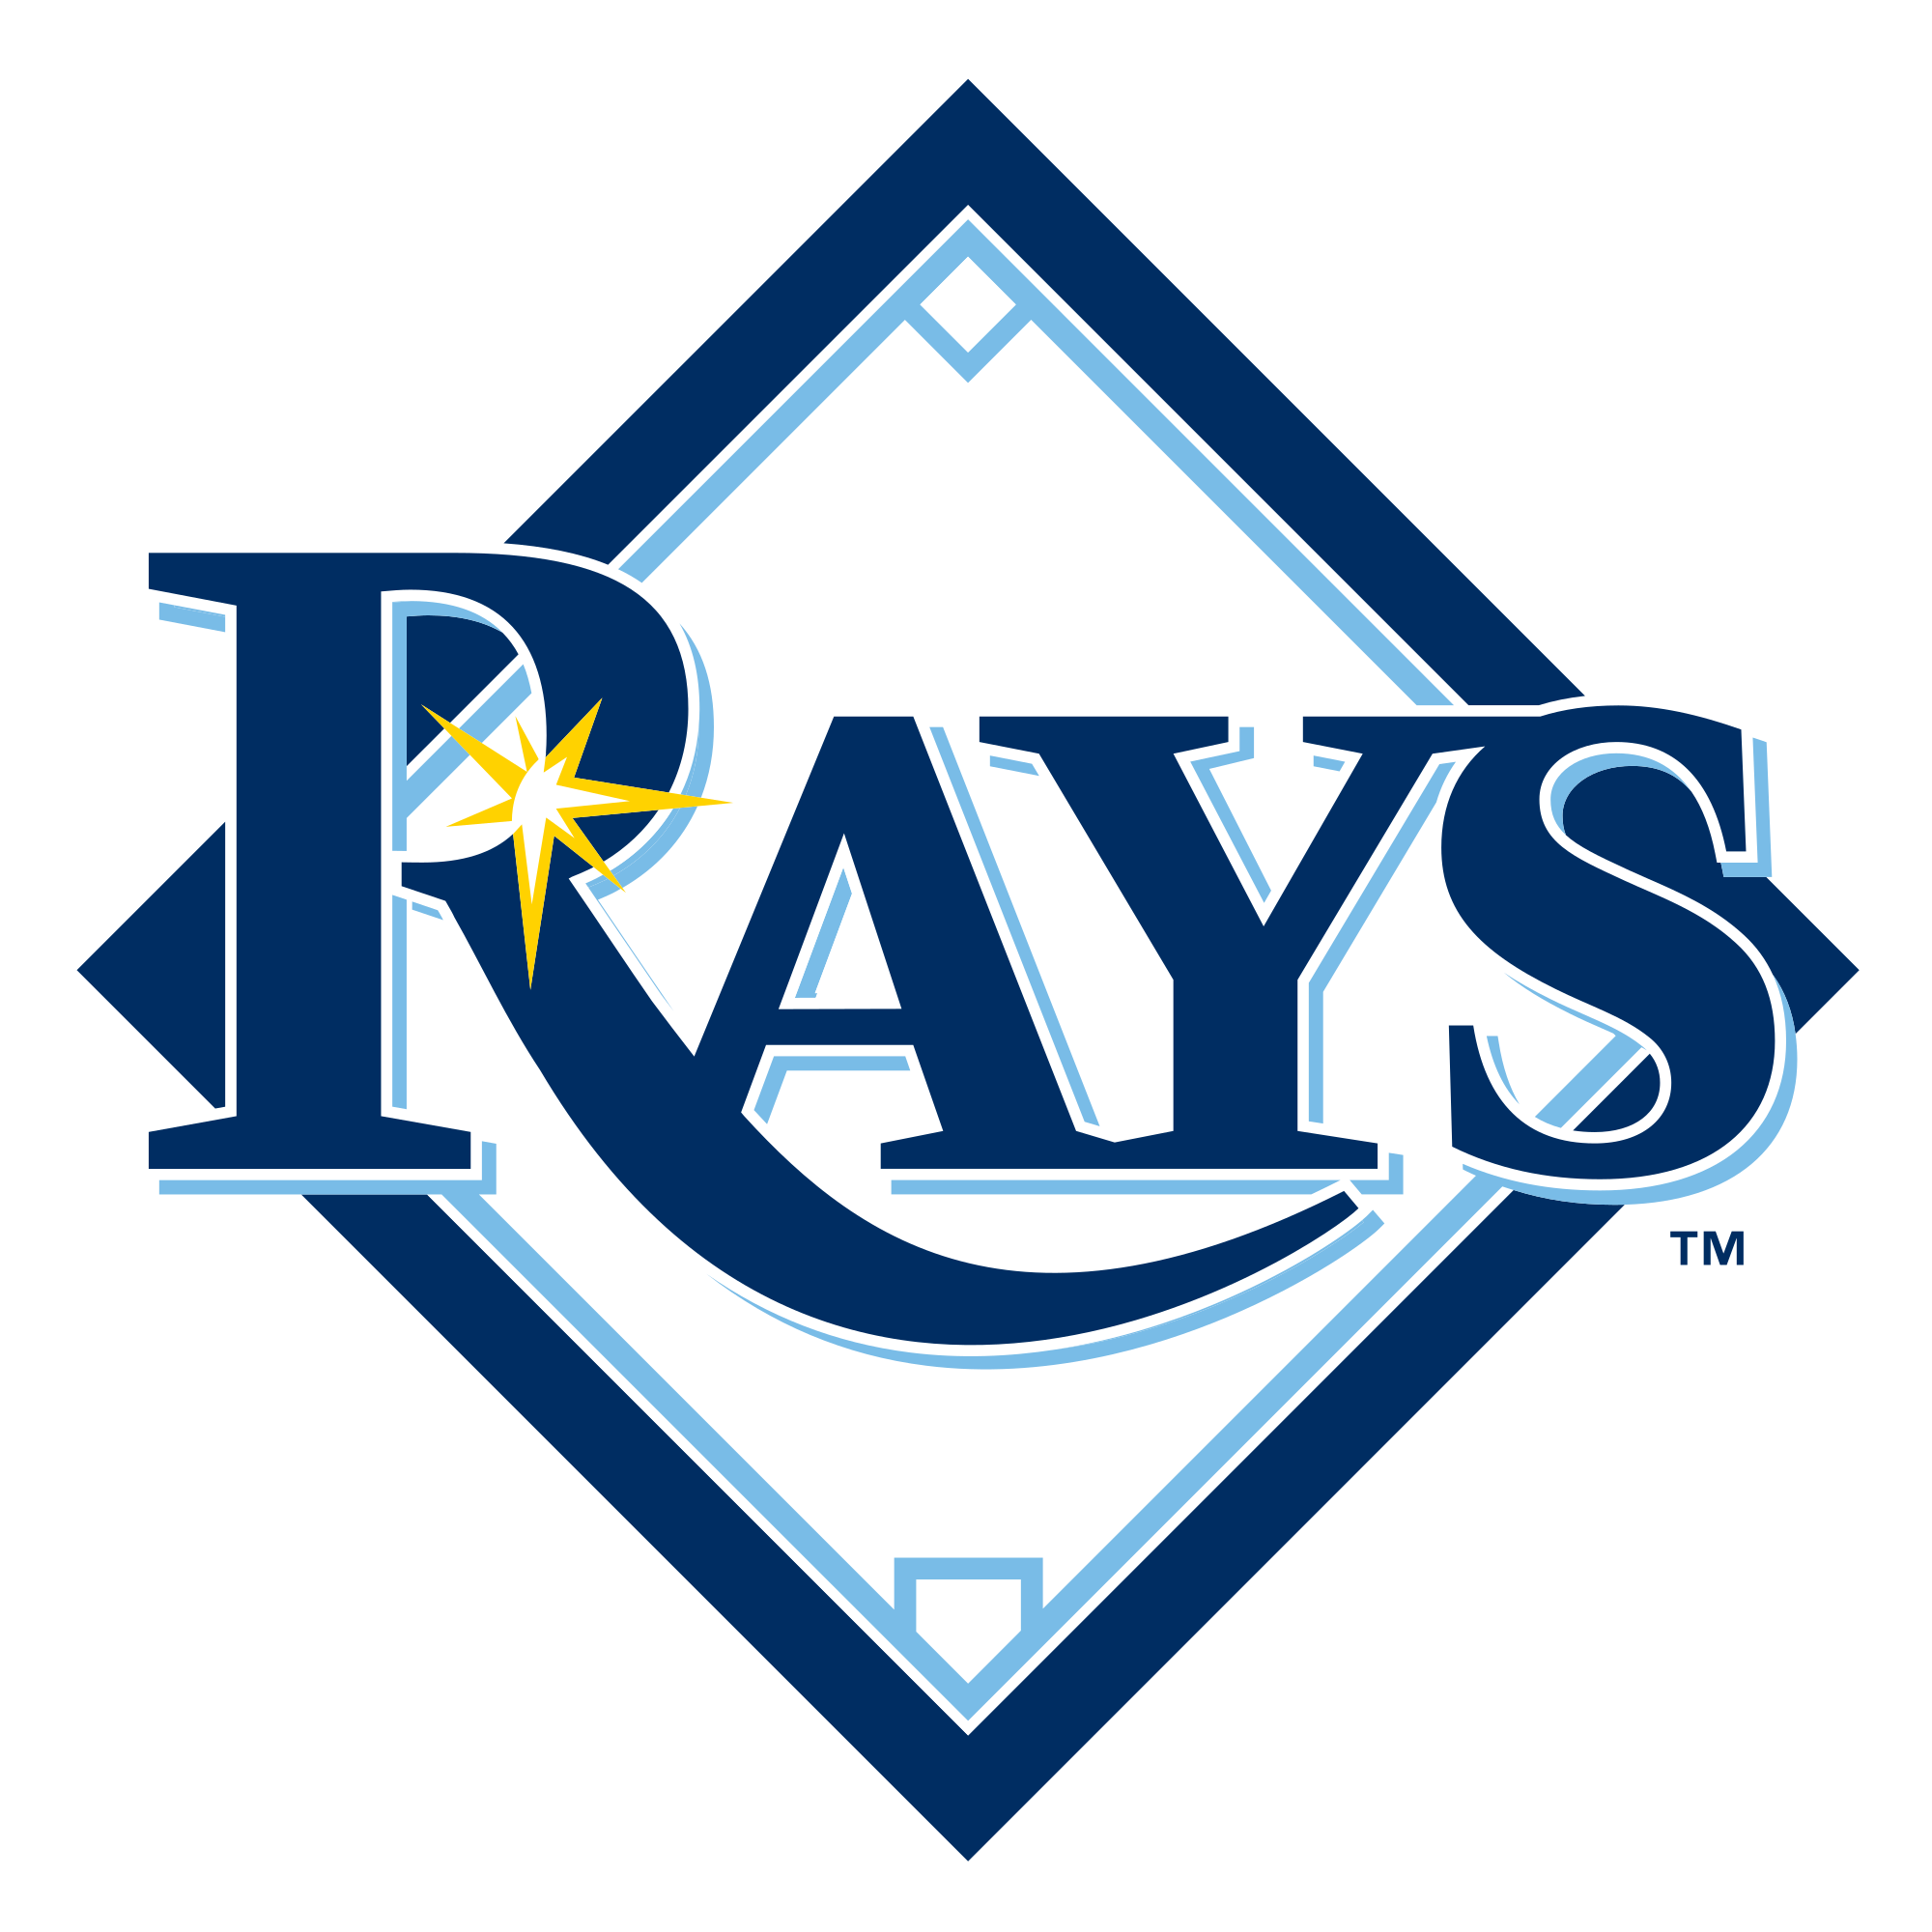 Tampa Bay Rays Logo PNG Image